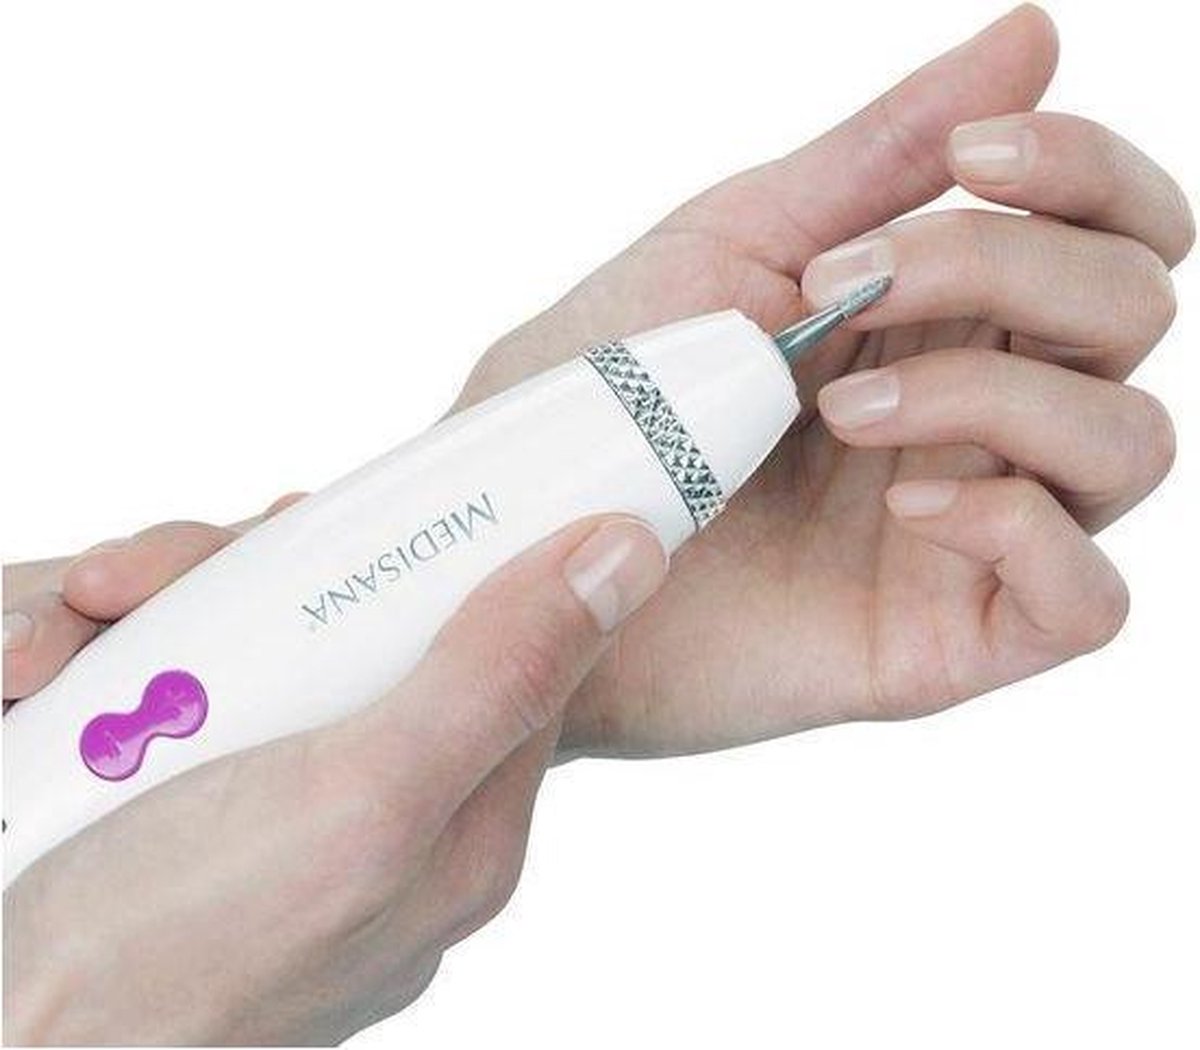 Medisana MP 840 - Manicure- pedicure set |